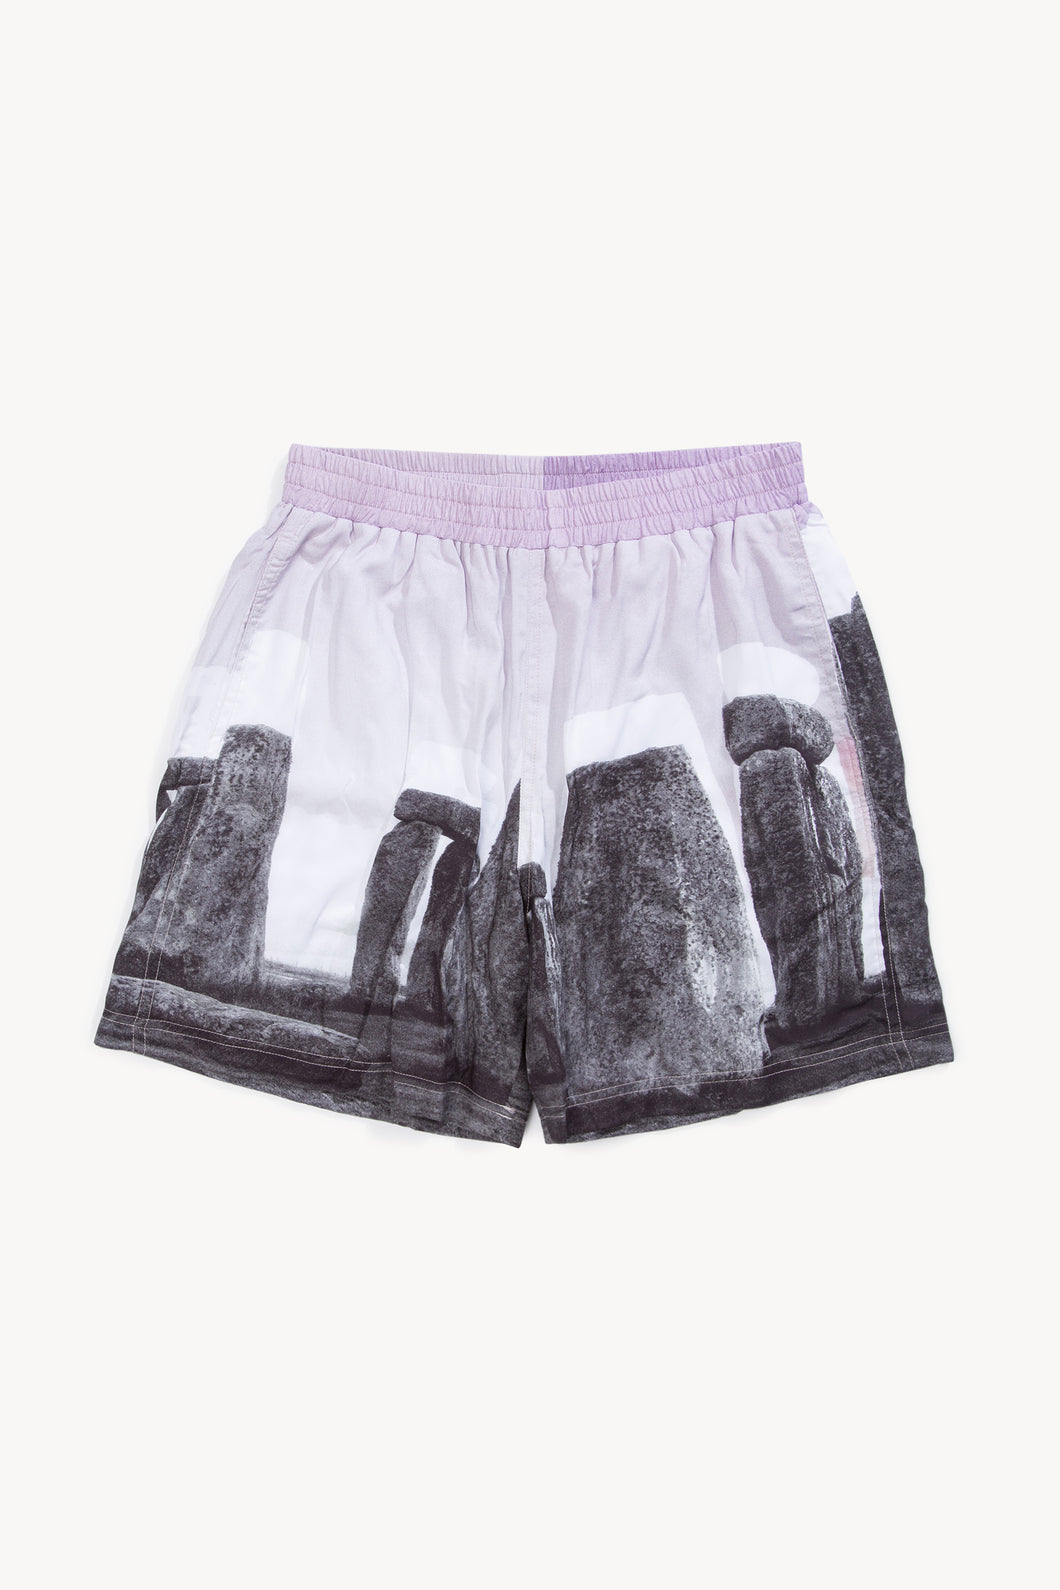 Stonehenge Shorts